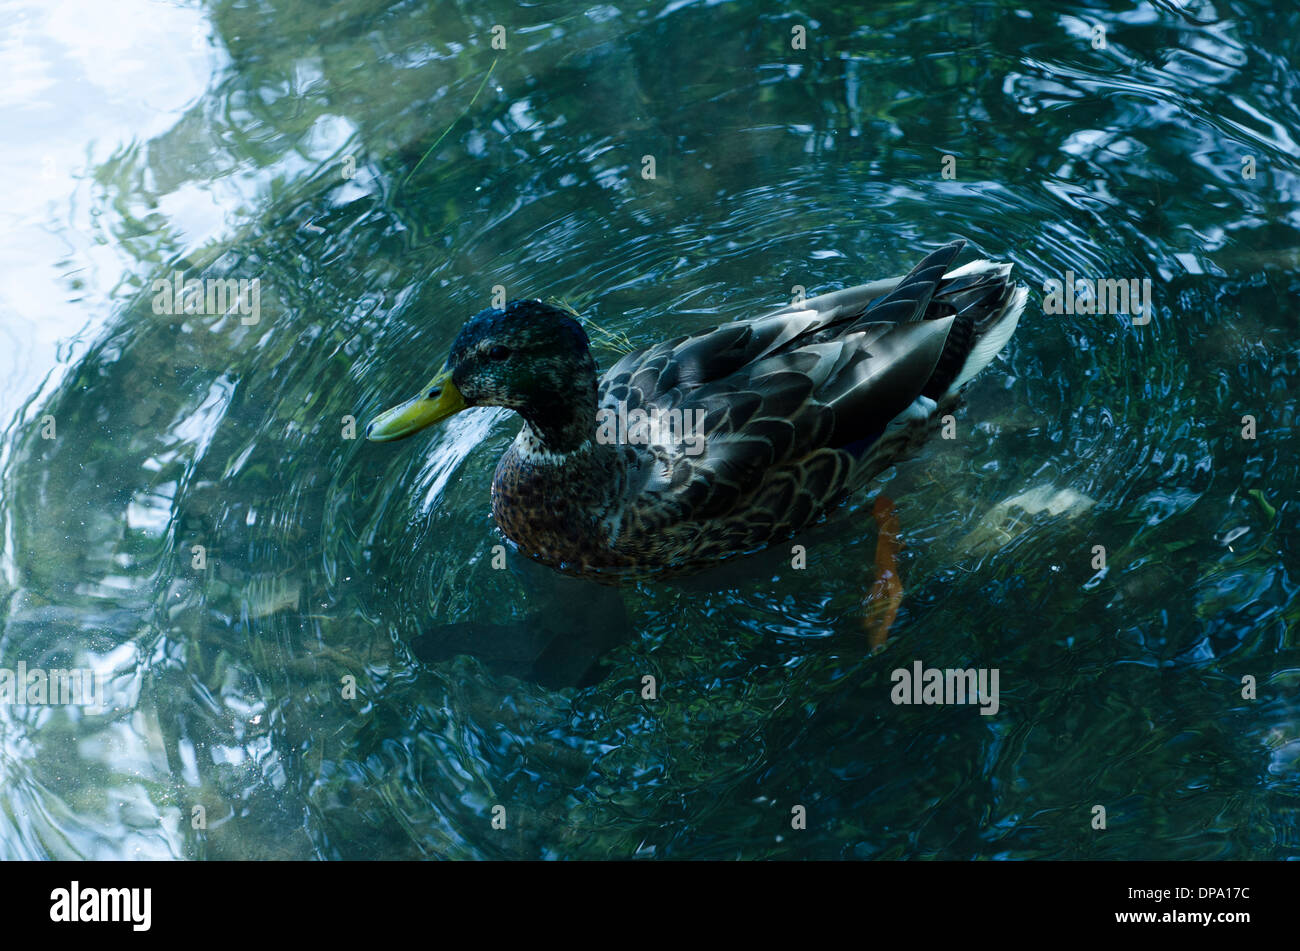 Un canard colvert pagayer dans l'eau looking at camera Banque D'Images